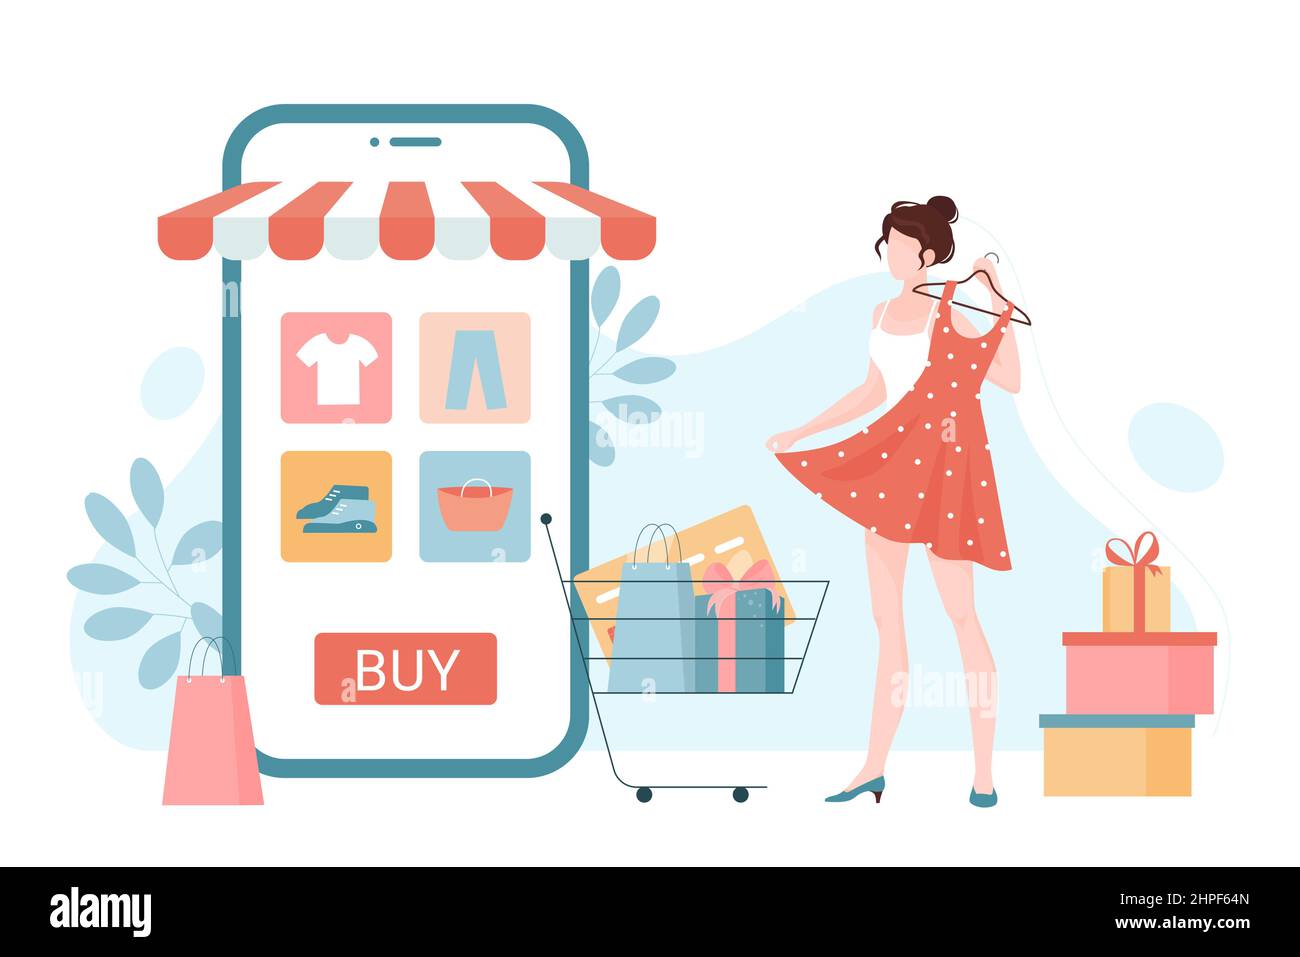 Comercio en línea, tienda de moda al por o aplicación de mercado cliente con compras. Diminuta de compras para comprar ropa vía móvil plano vector ilustración. Marketing digital,